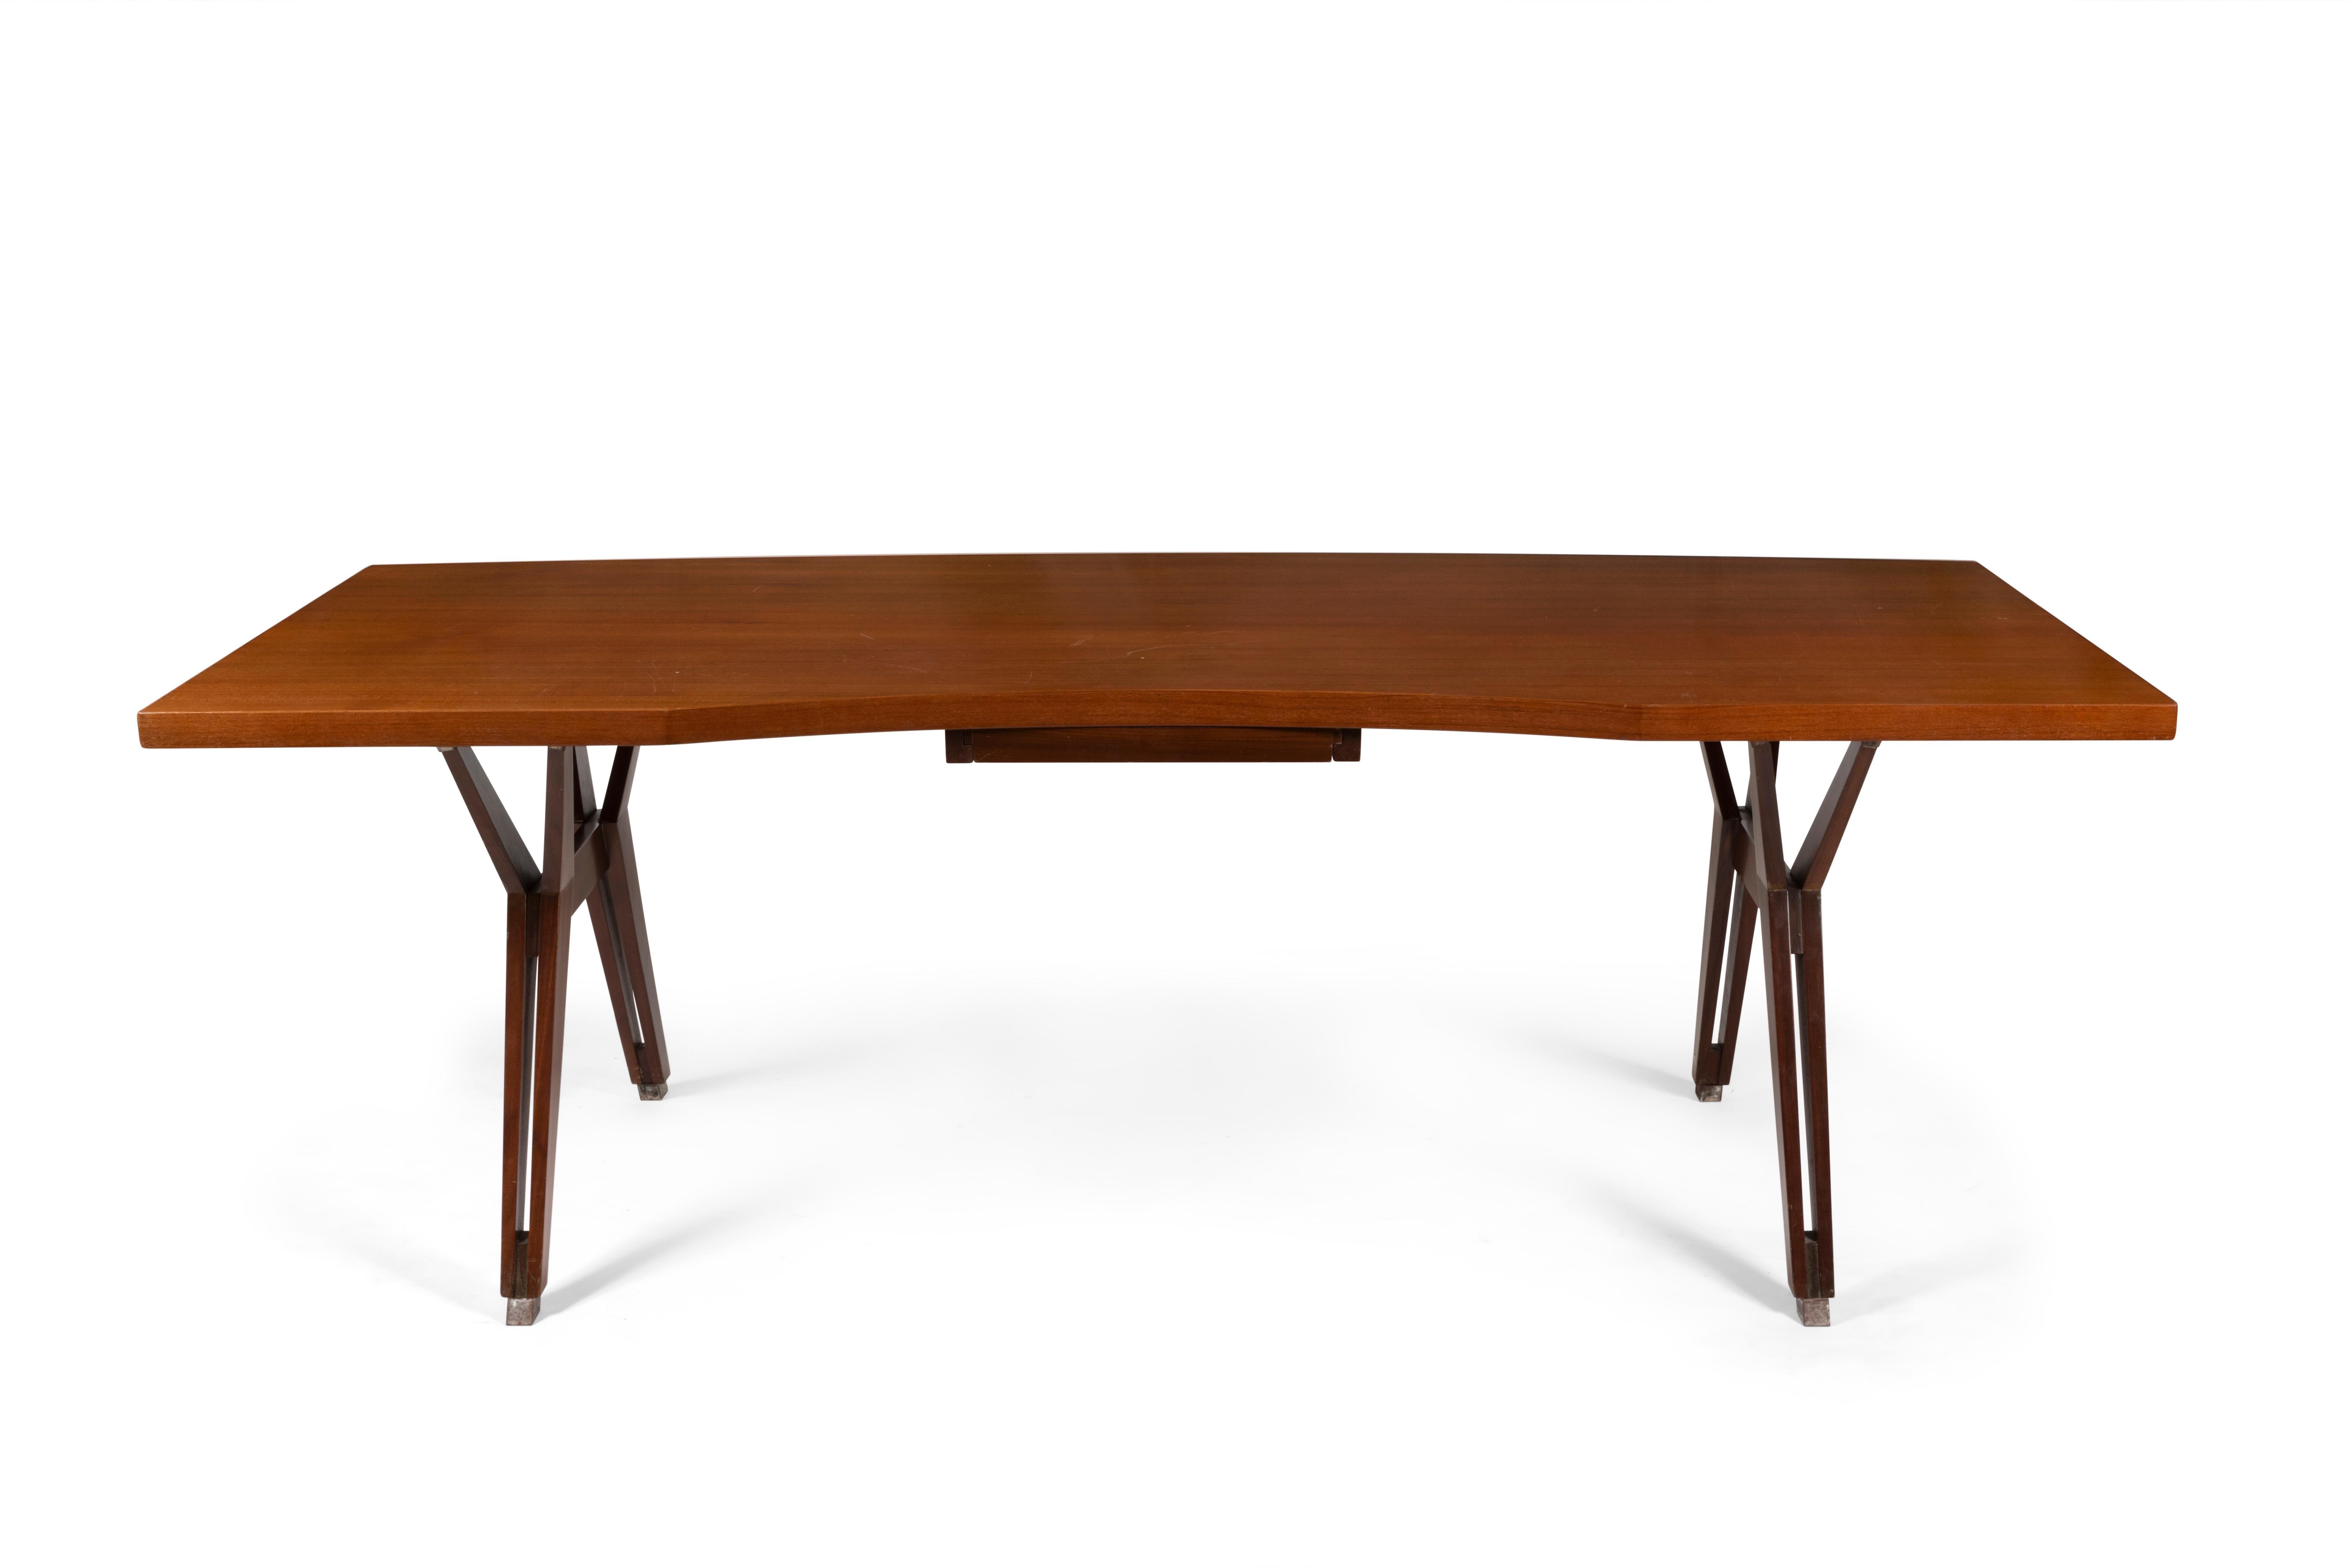 Bureau ou grande table avec plateau cintré en palissandre, tiroir central, piétement en acier, Ico Parisi, circa 1958.

Dimensions : H72 x L210 x P90cm